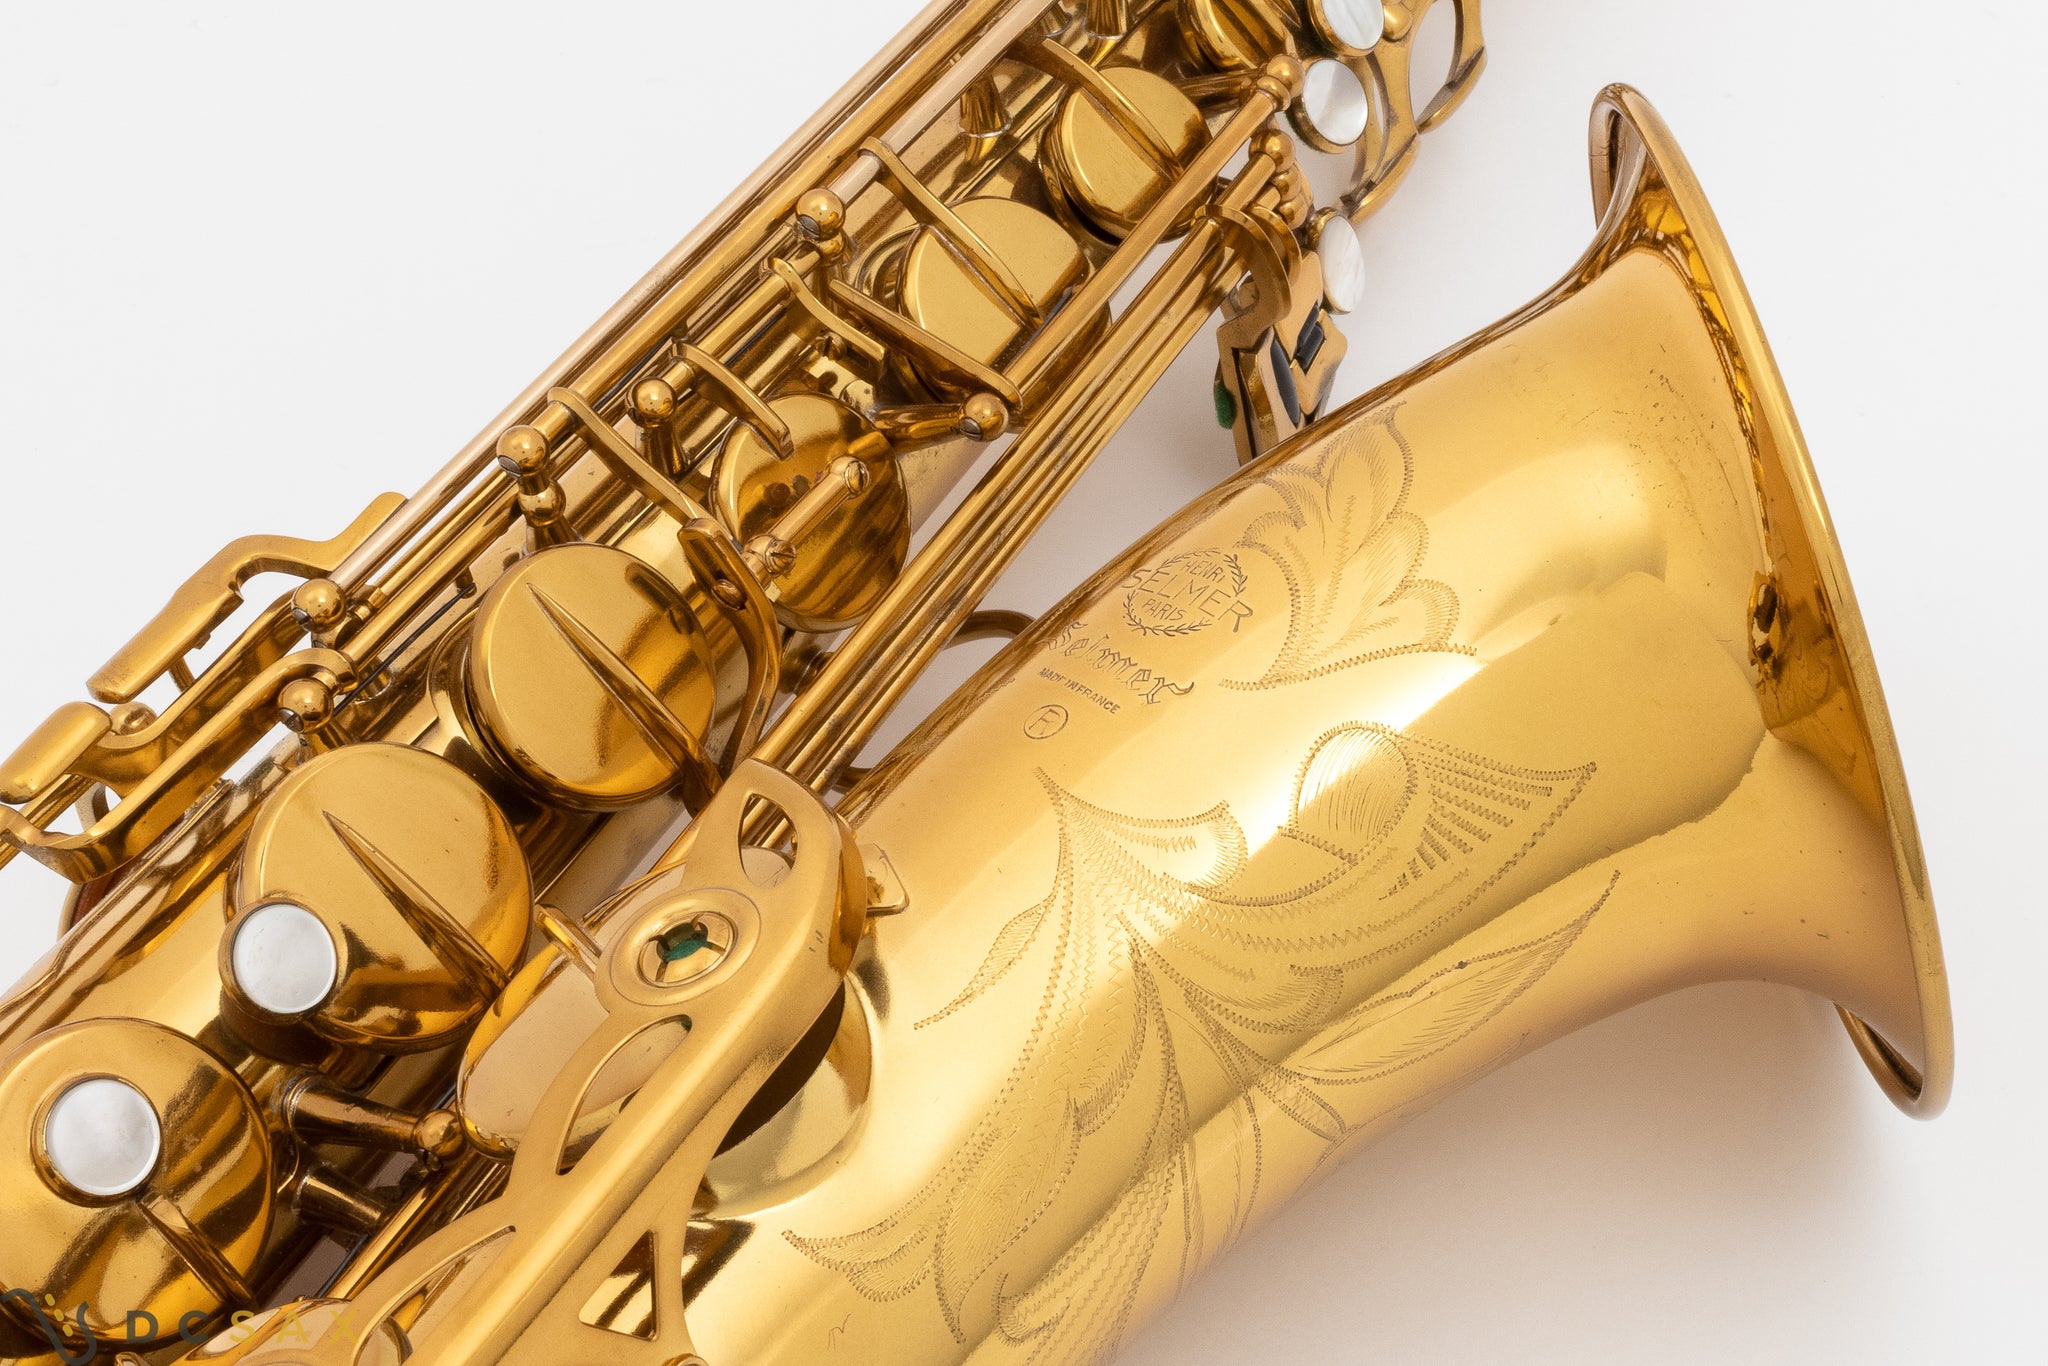 154,xxx Selmer Mark VI Tenor Saxophone, Near Mint